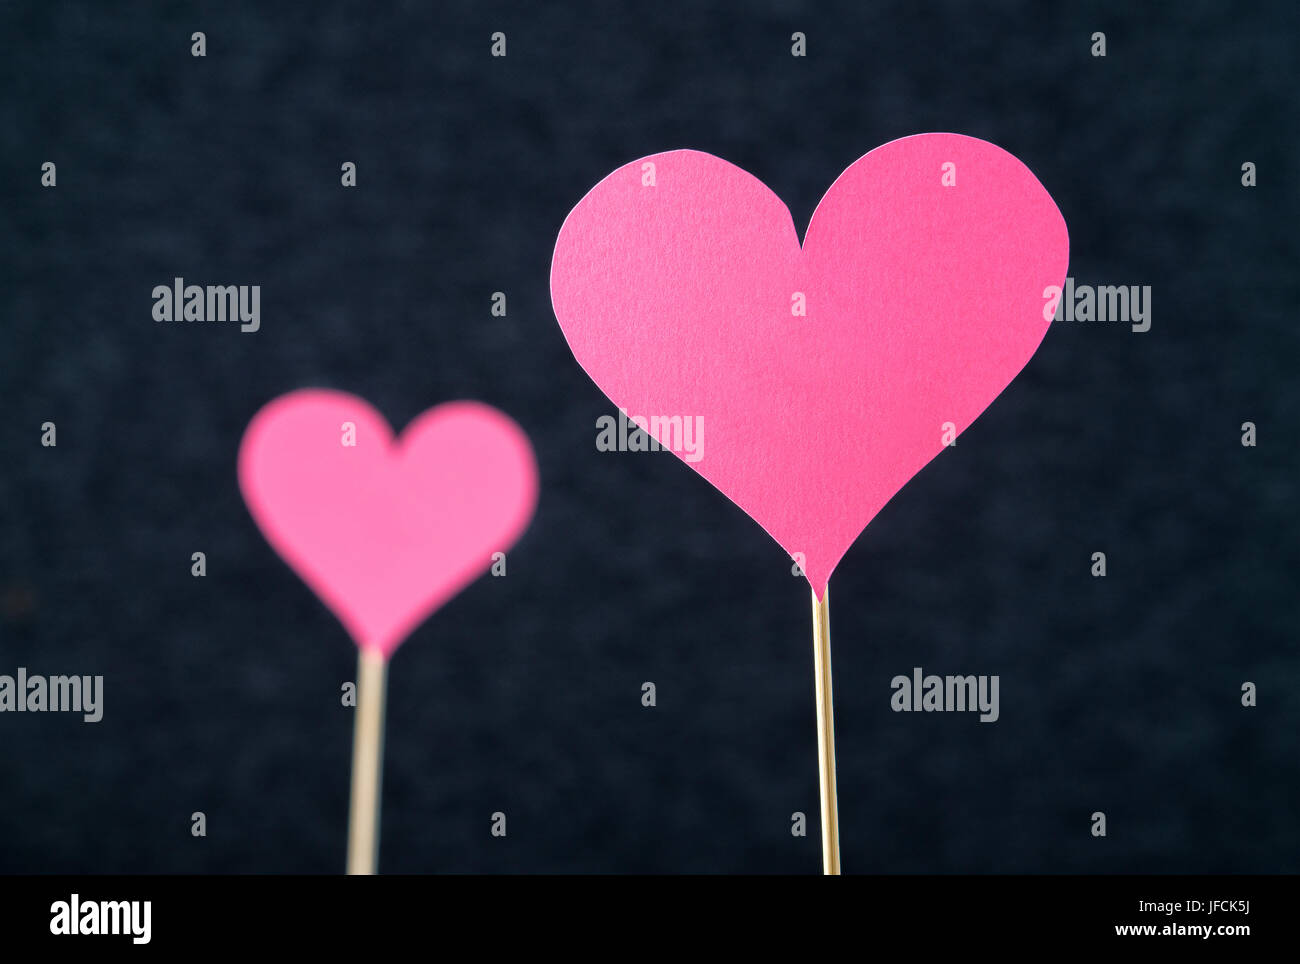 Zwei romantische Herzen schneiden Sie aus Pappe oder Papier auf Holzstab und dunklen Hintergrund. Schöne, handgefertigte rosa rote Liebe Formen. Stockfoto